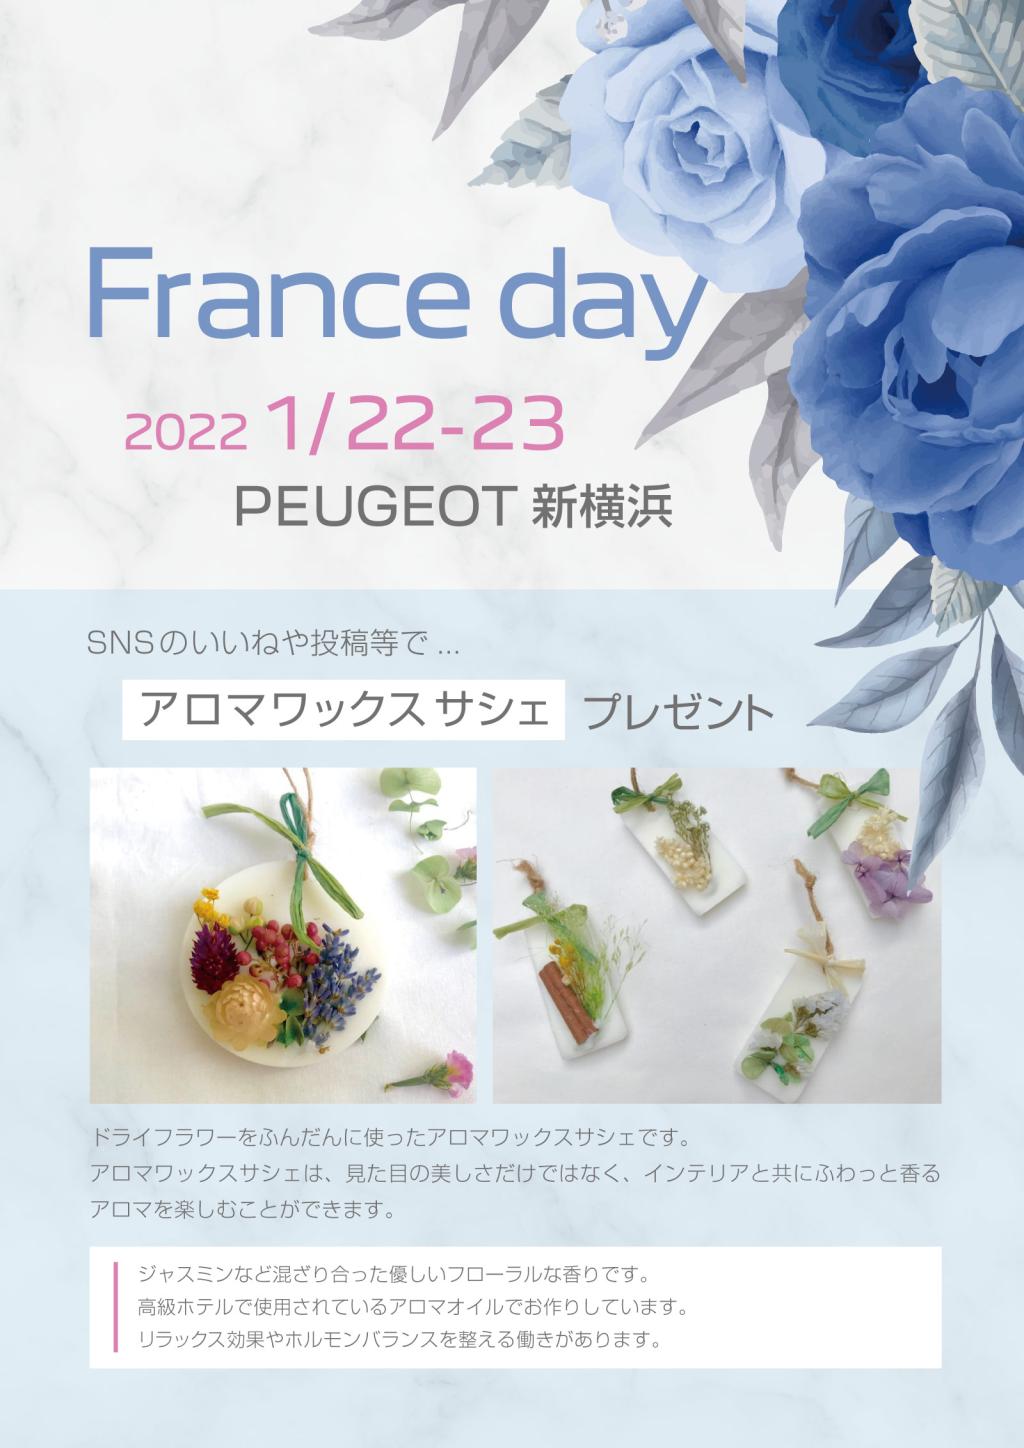 1/22.23日France Day!!